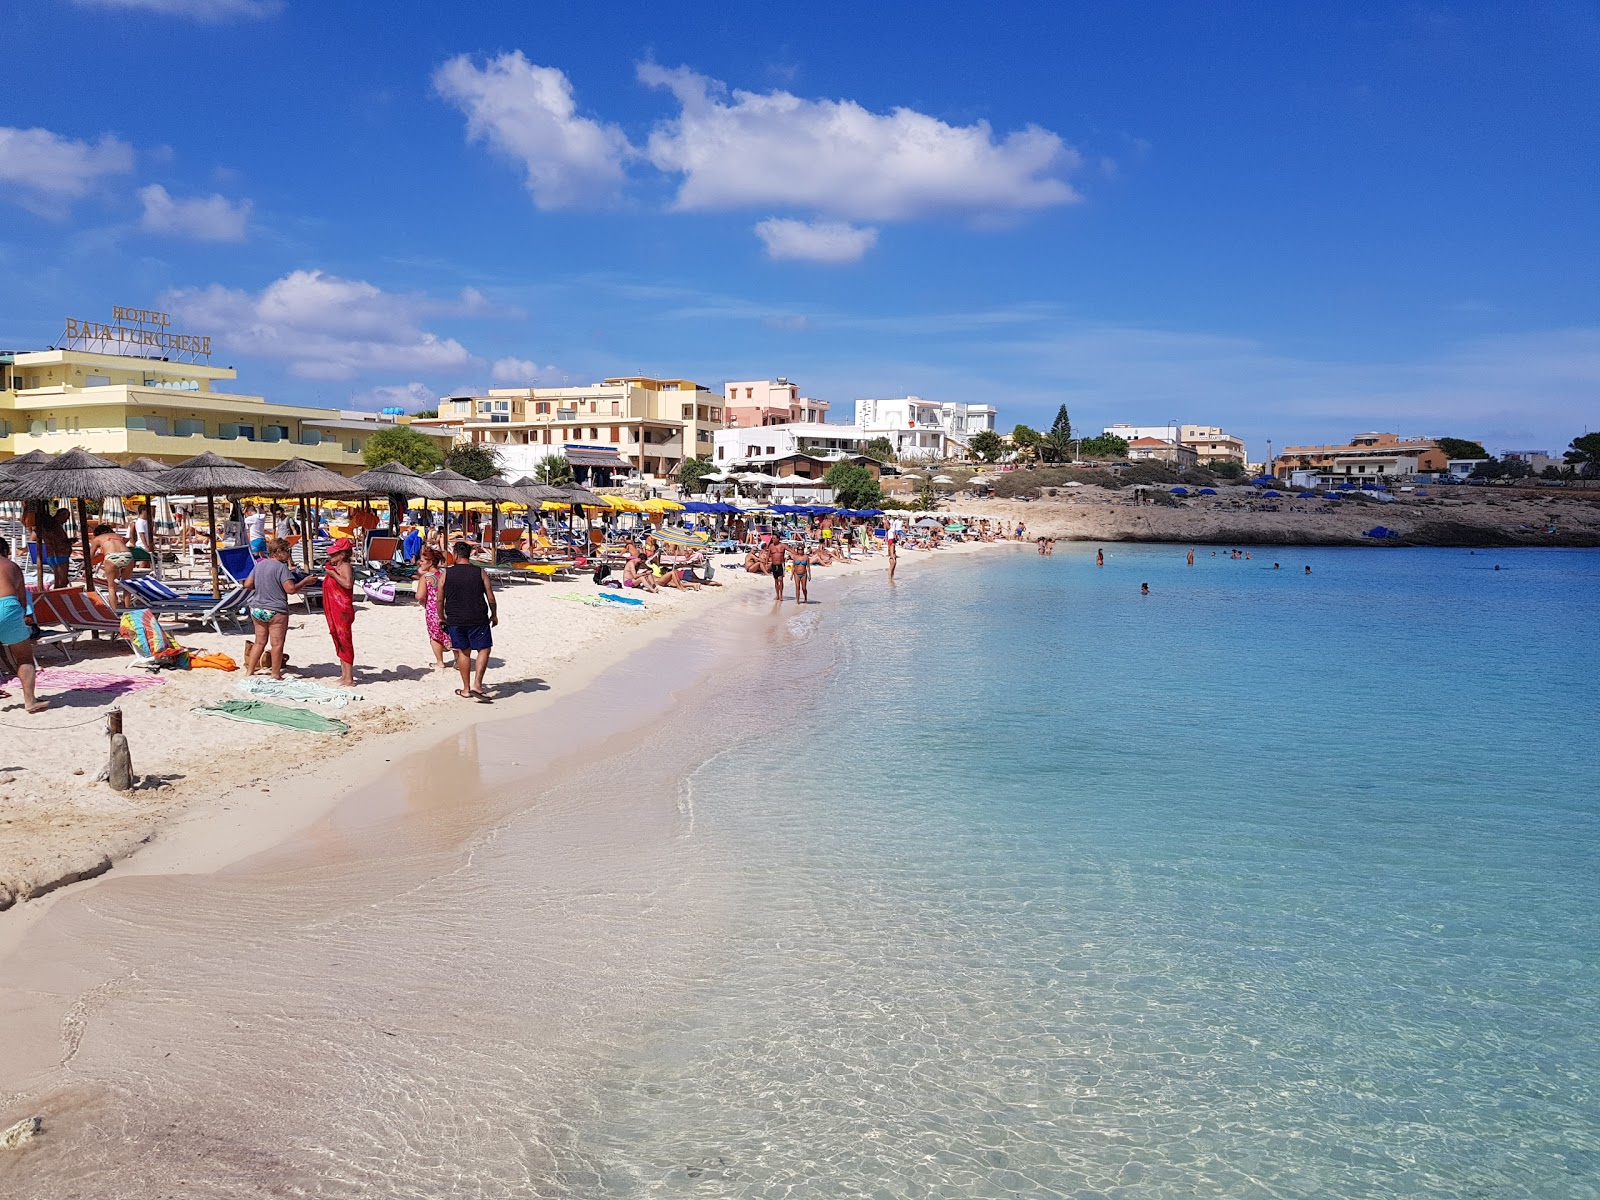 Foto von Spiaggia della Guitgia mit viele kleine buchten